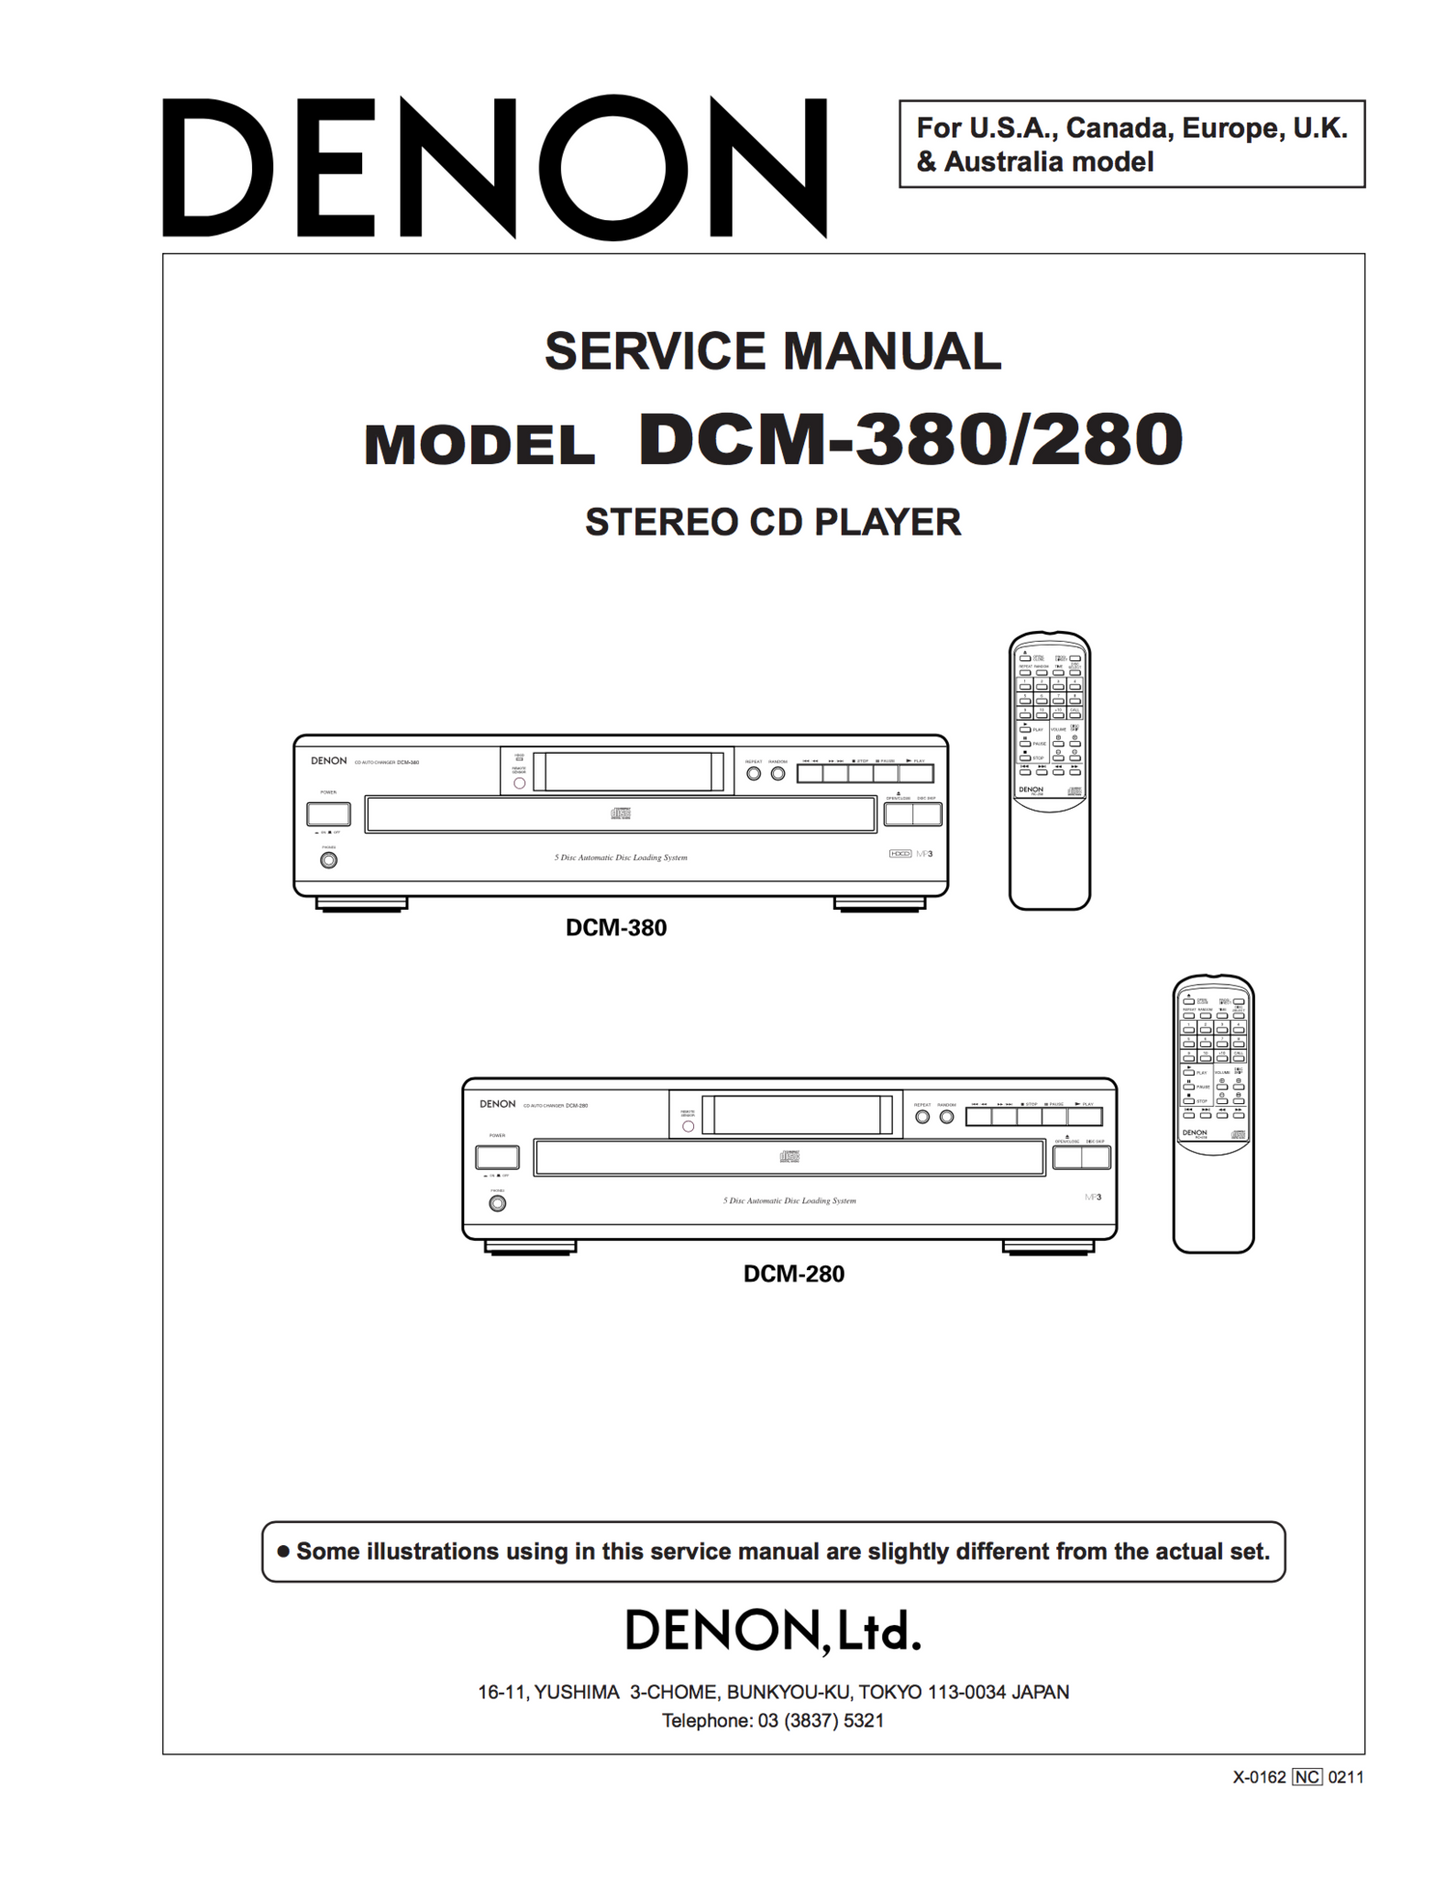 Denon DCM-280 Service Manual Complete